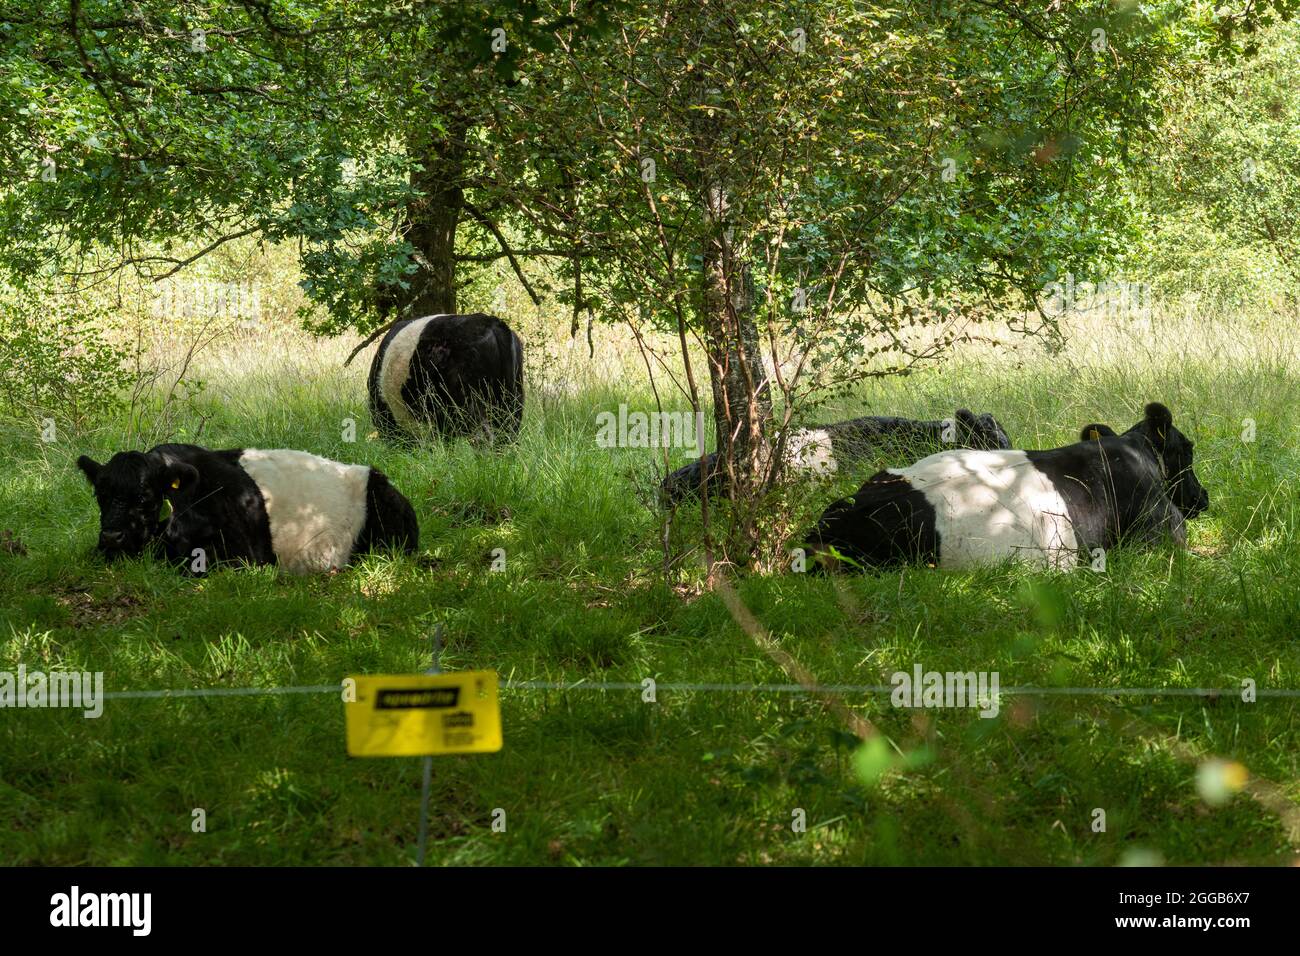 Ganado galloway Belted pastoreo en una reserva natural para controlar el crecimiento de matorrales detrás de una valla eléctrica, la gestión del hábitat de vida silvestre en el Reino Unido Foto de stock